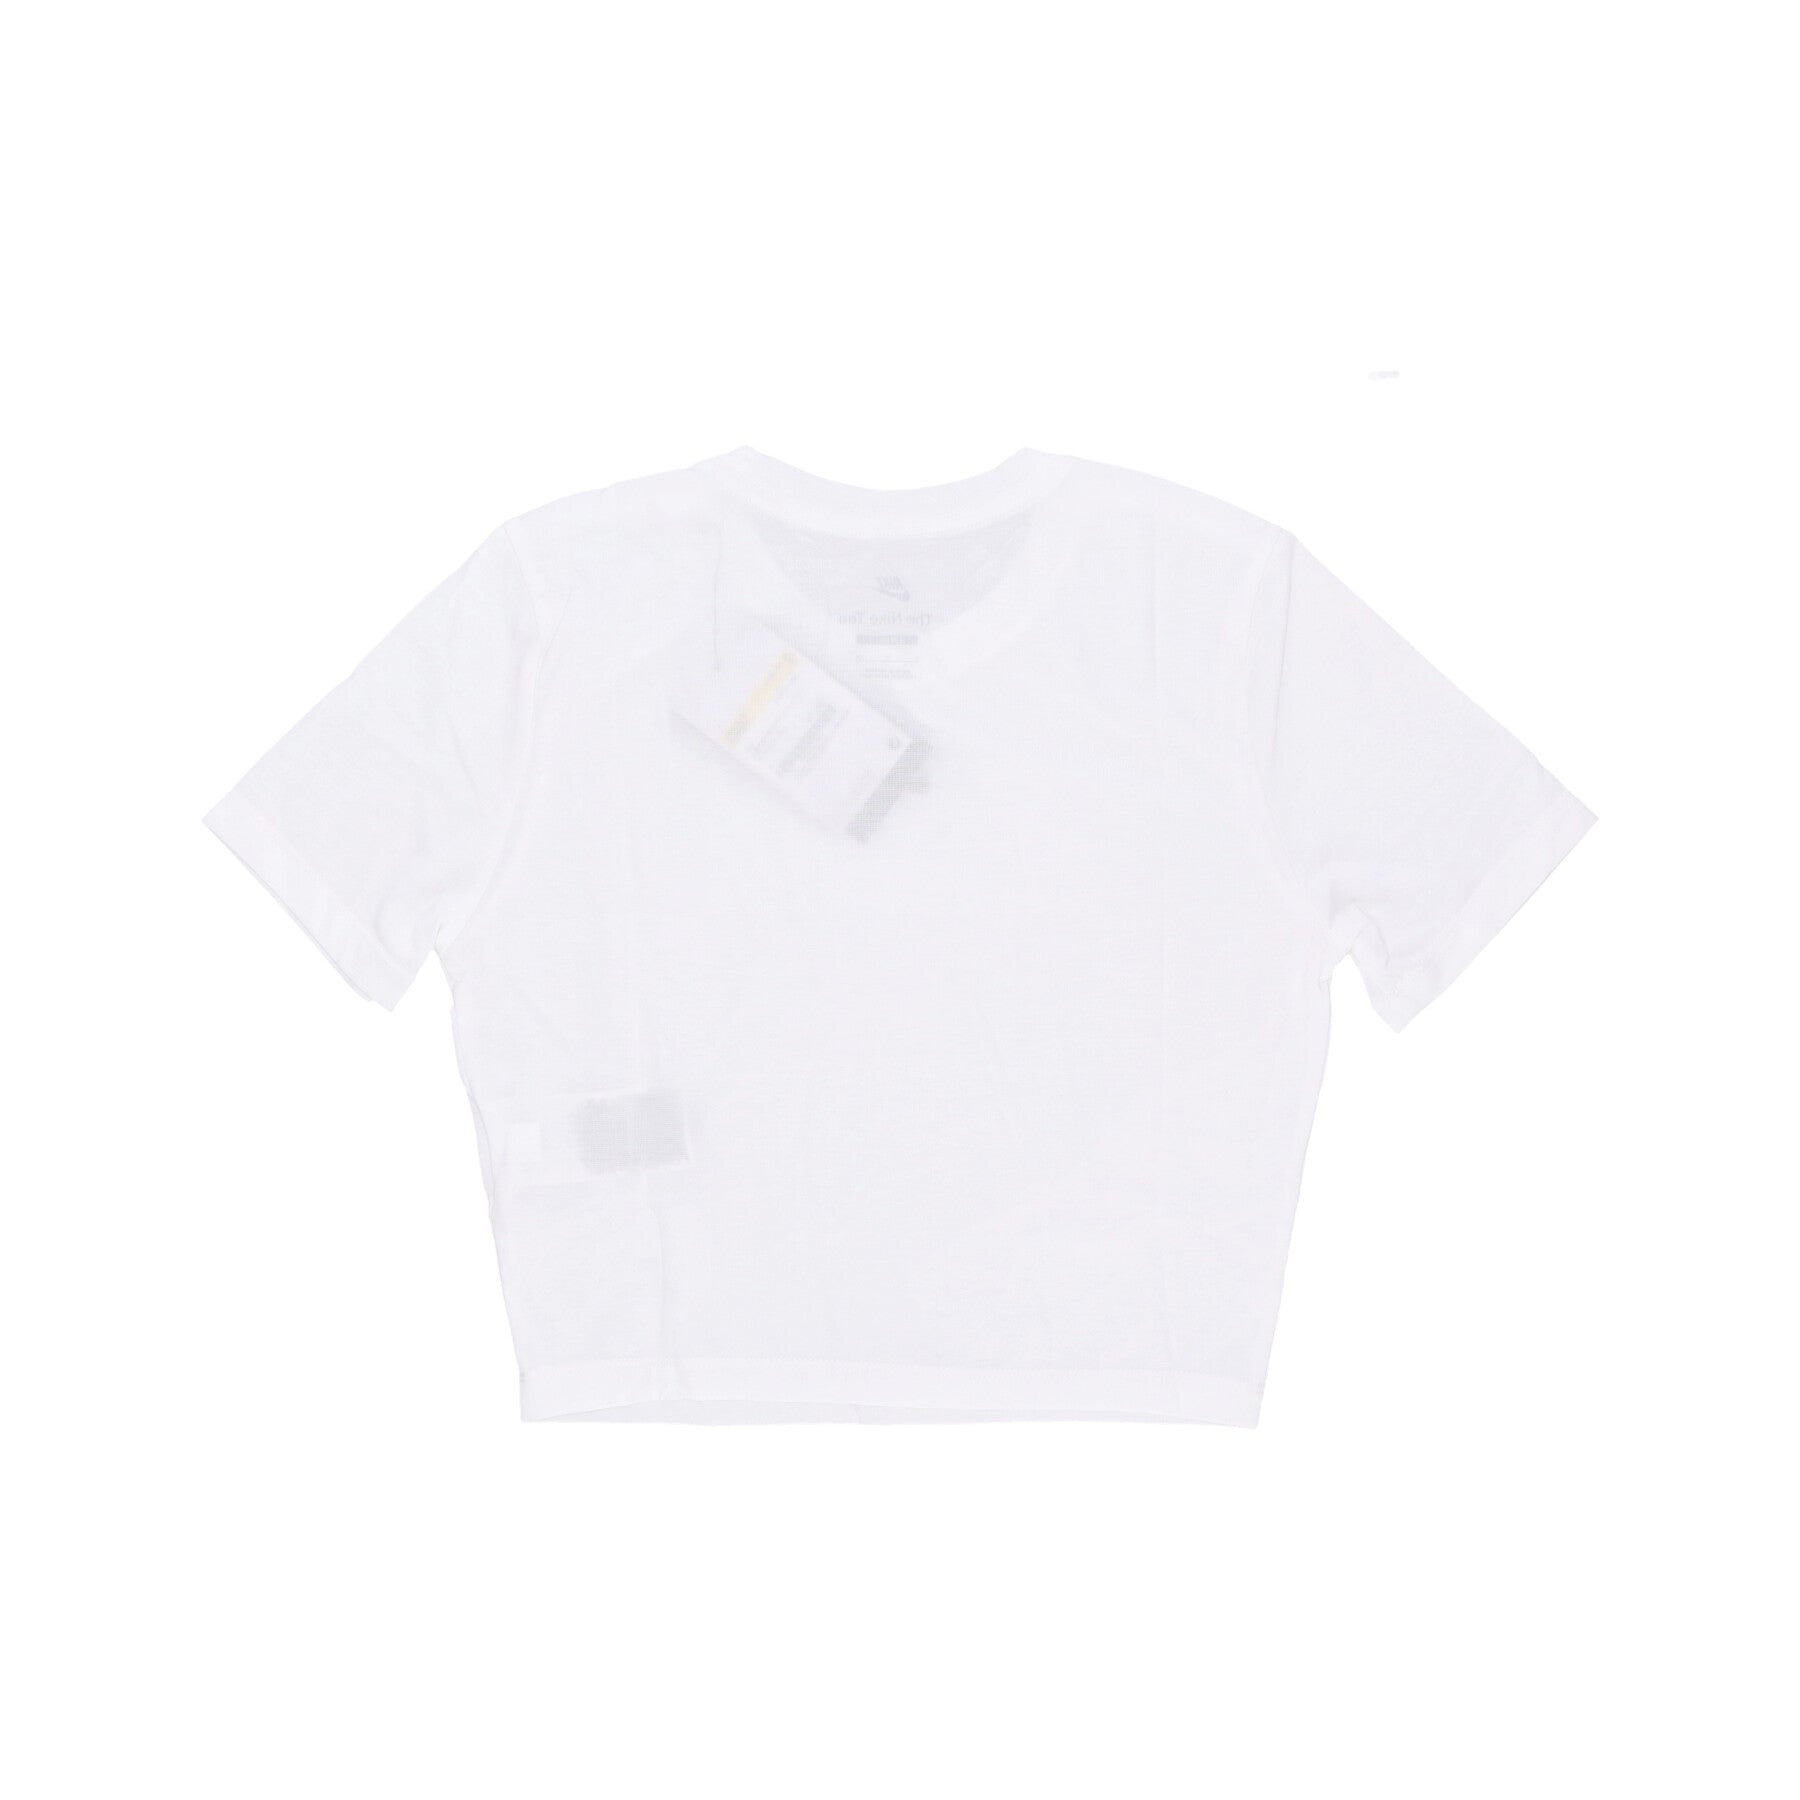 W Sportswear Essential Slim-fit Crop Tee Damen-Kurz-T-Shirt Weiß/Weiß/Schwarz